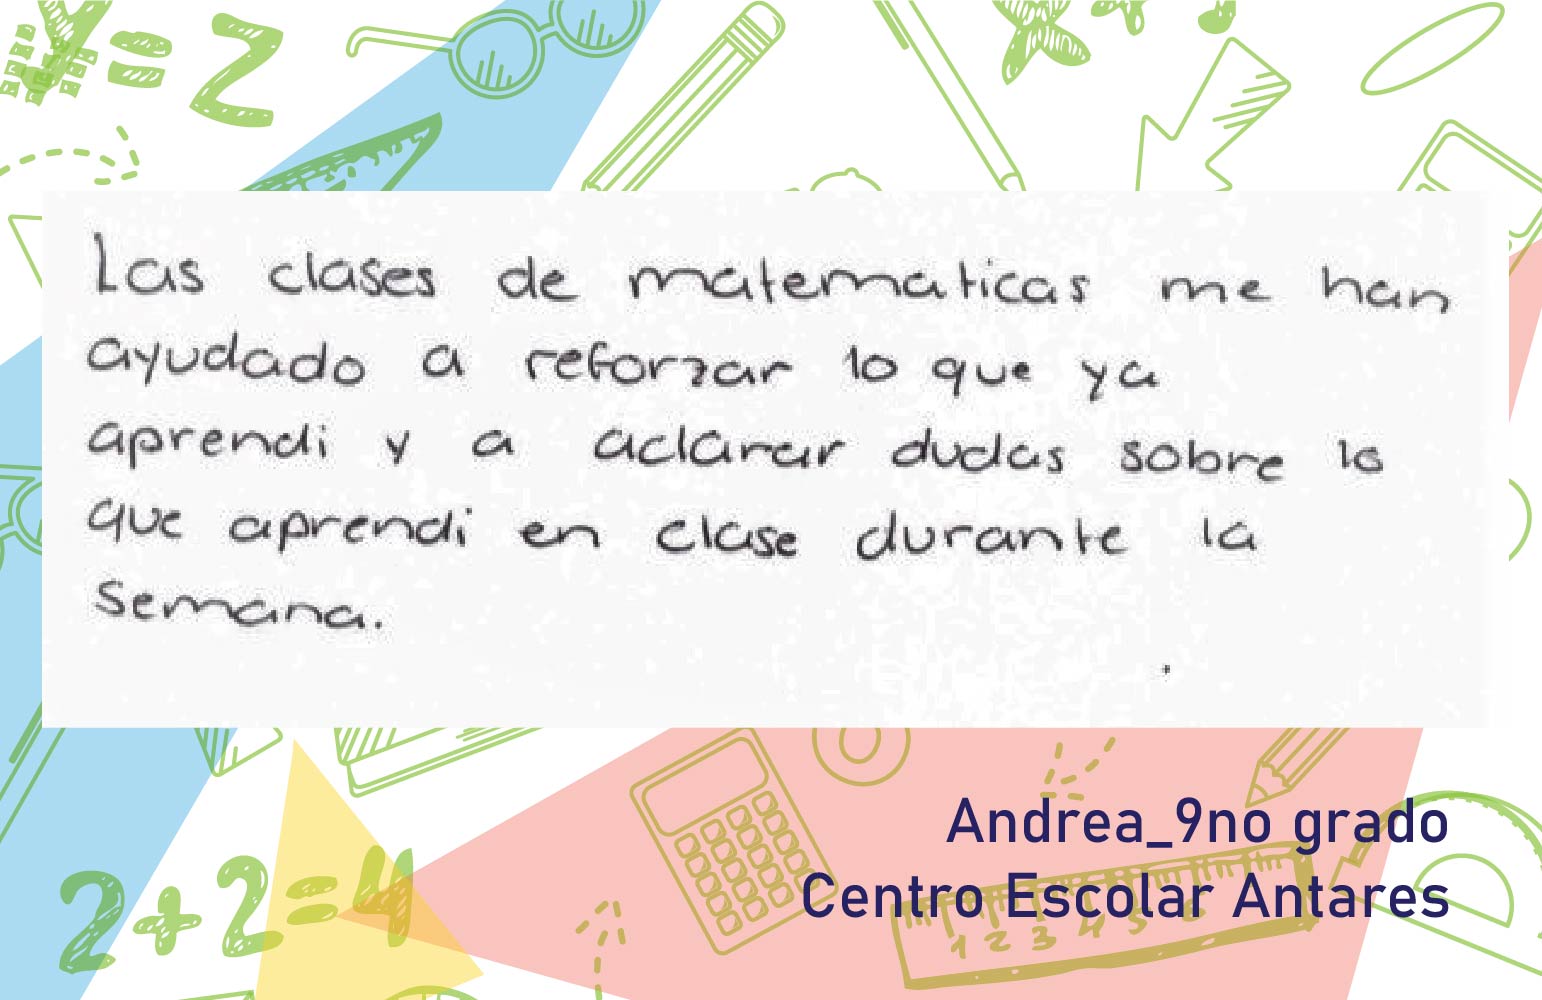  Andrea (Estudiante) dice: 